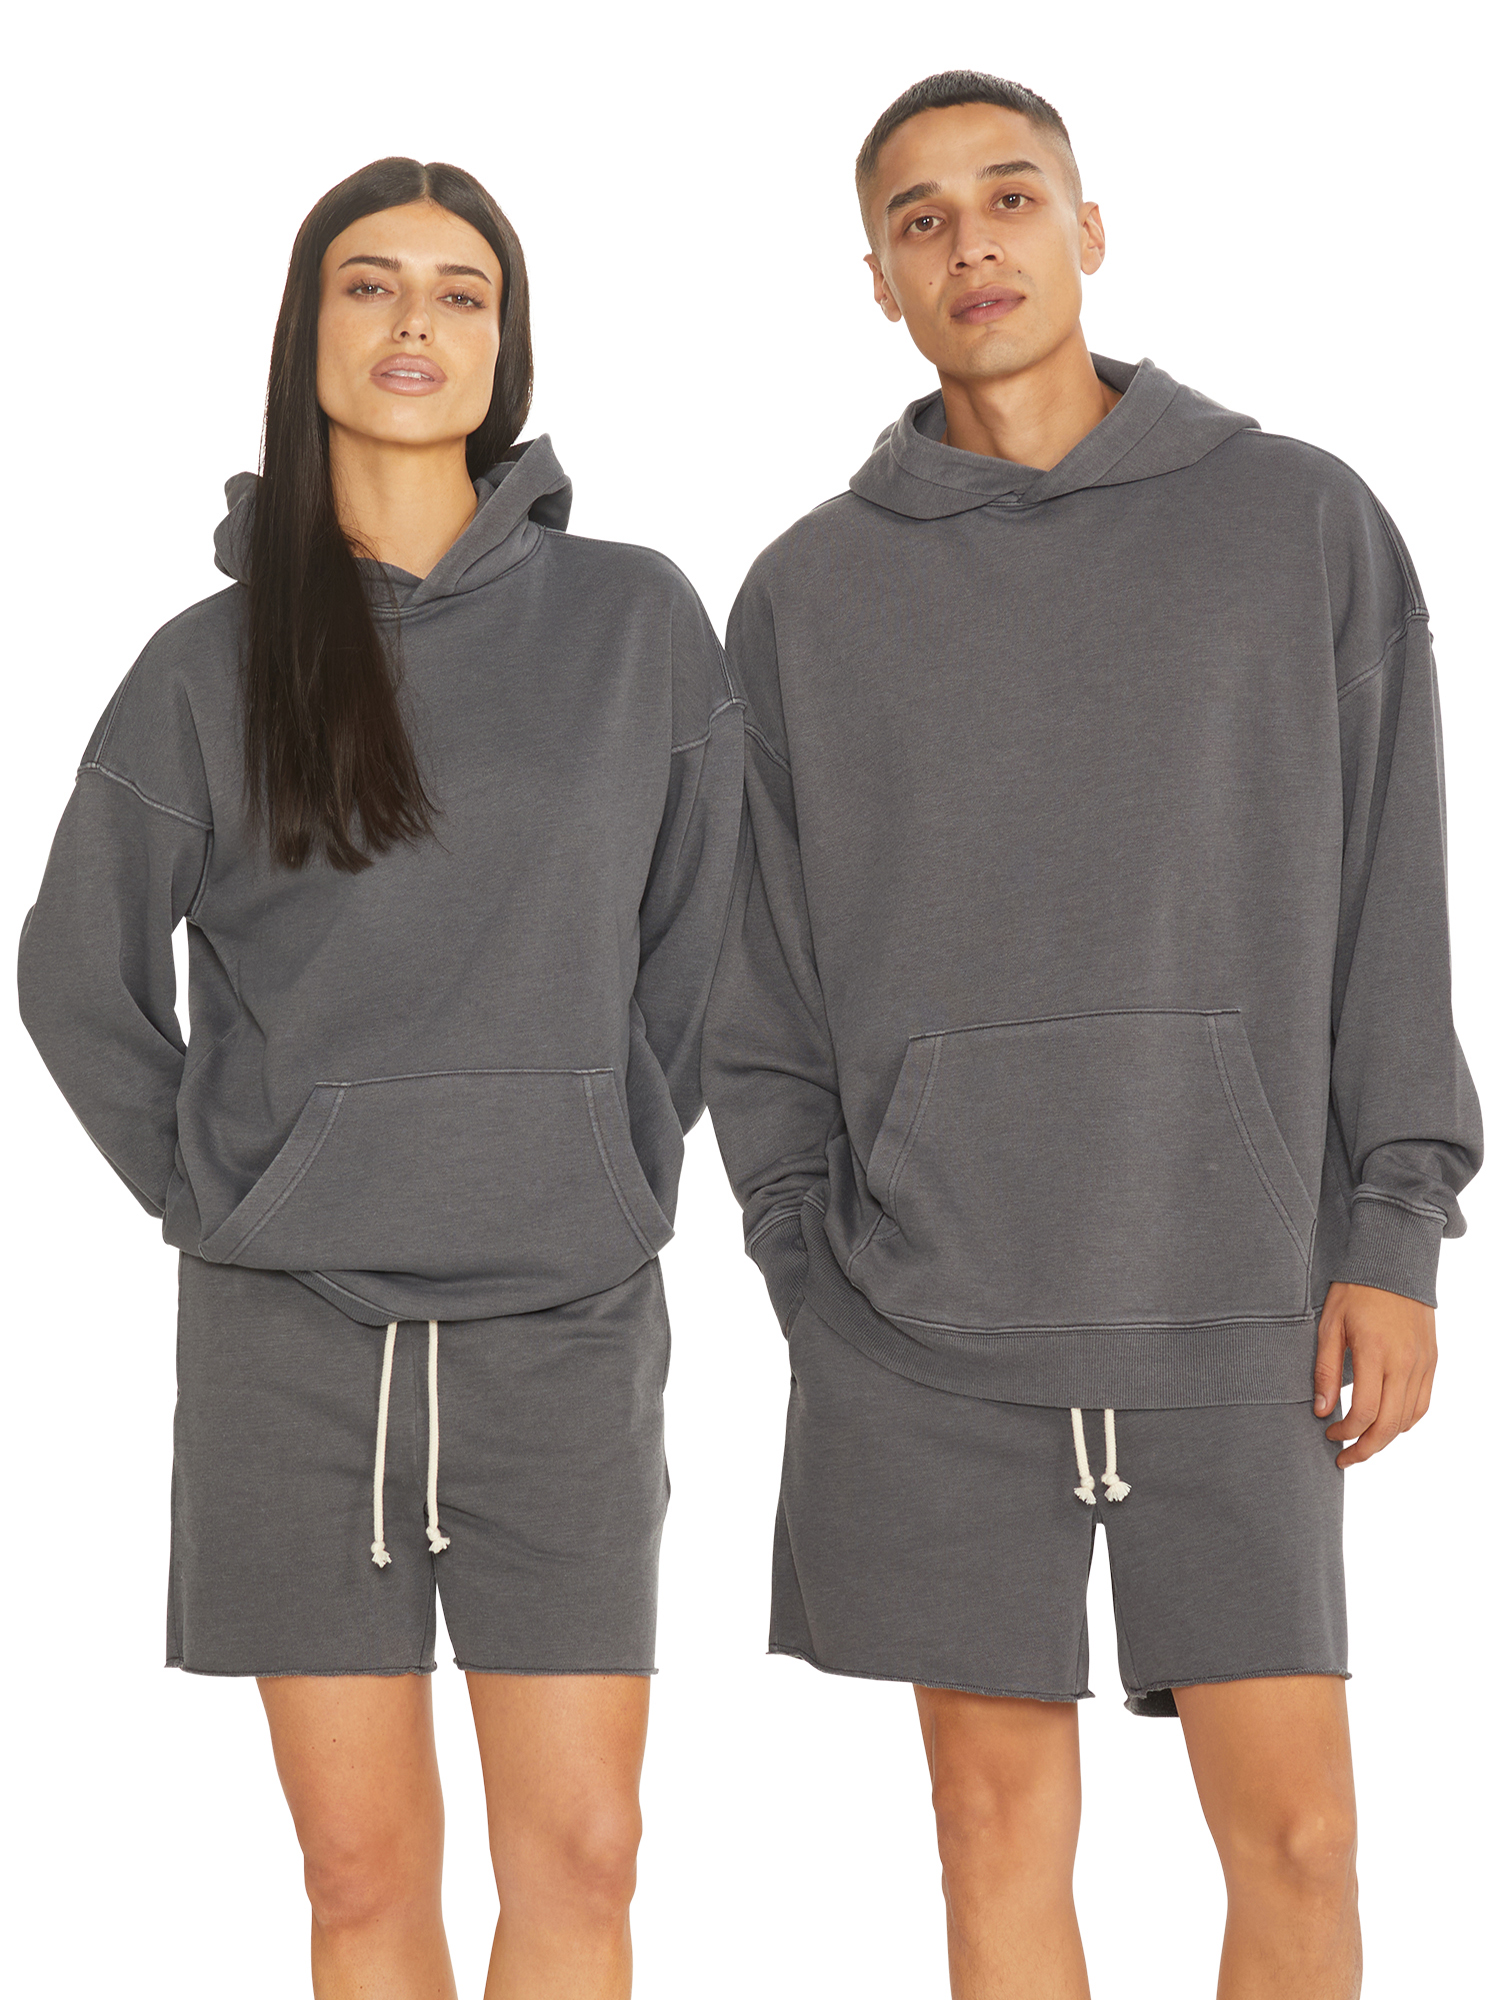 No Boundaries All Gender Fleece Hoodie Sweatshirt, Men's Sizes XS - 5XL - image 1 of 5